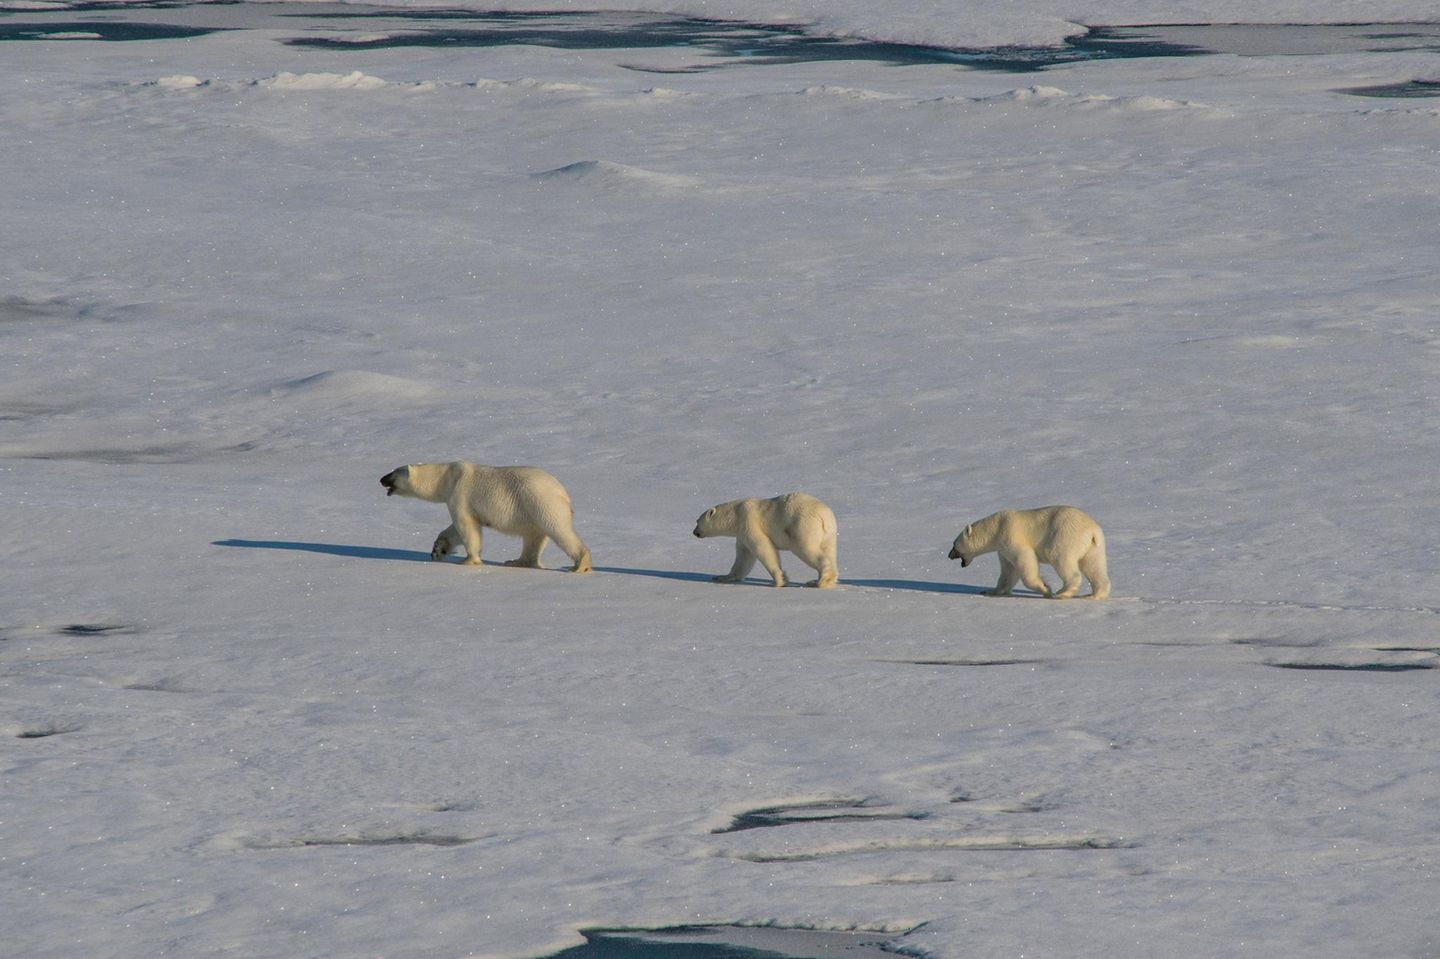 Je stärker das Eis schmilzt, um so profitabler wird die chinesische Idee von der arktischen Seidenstraße